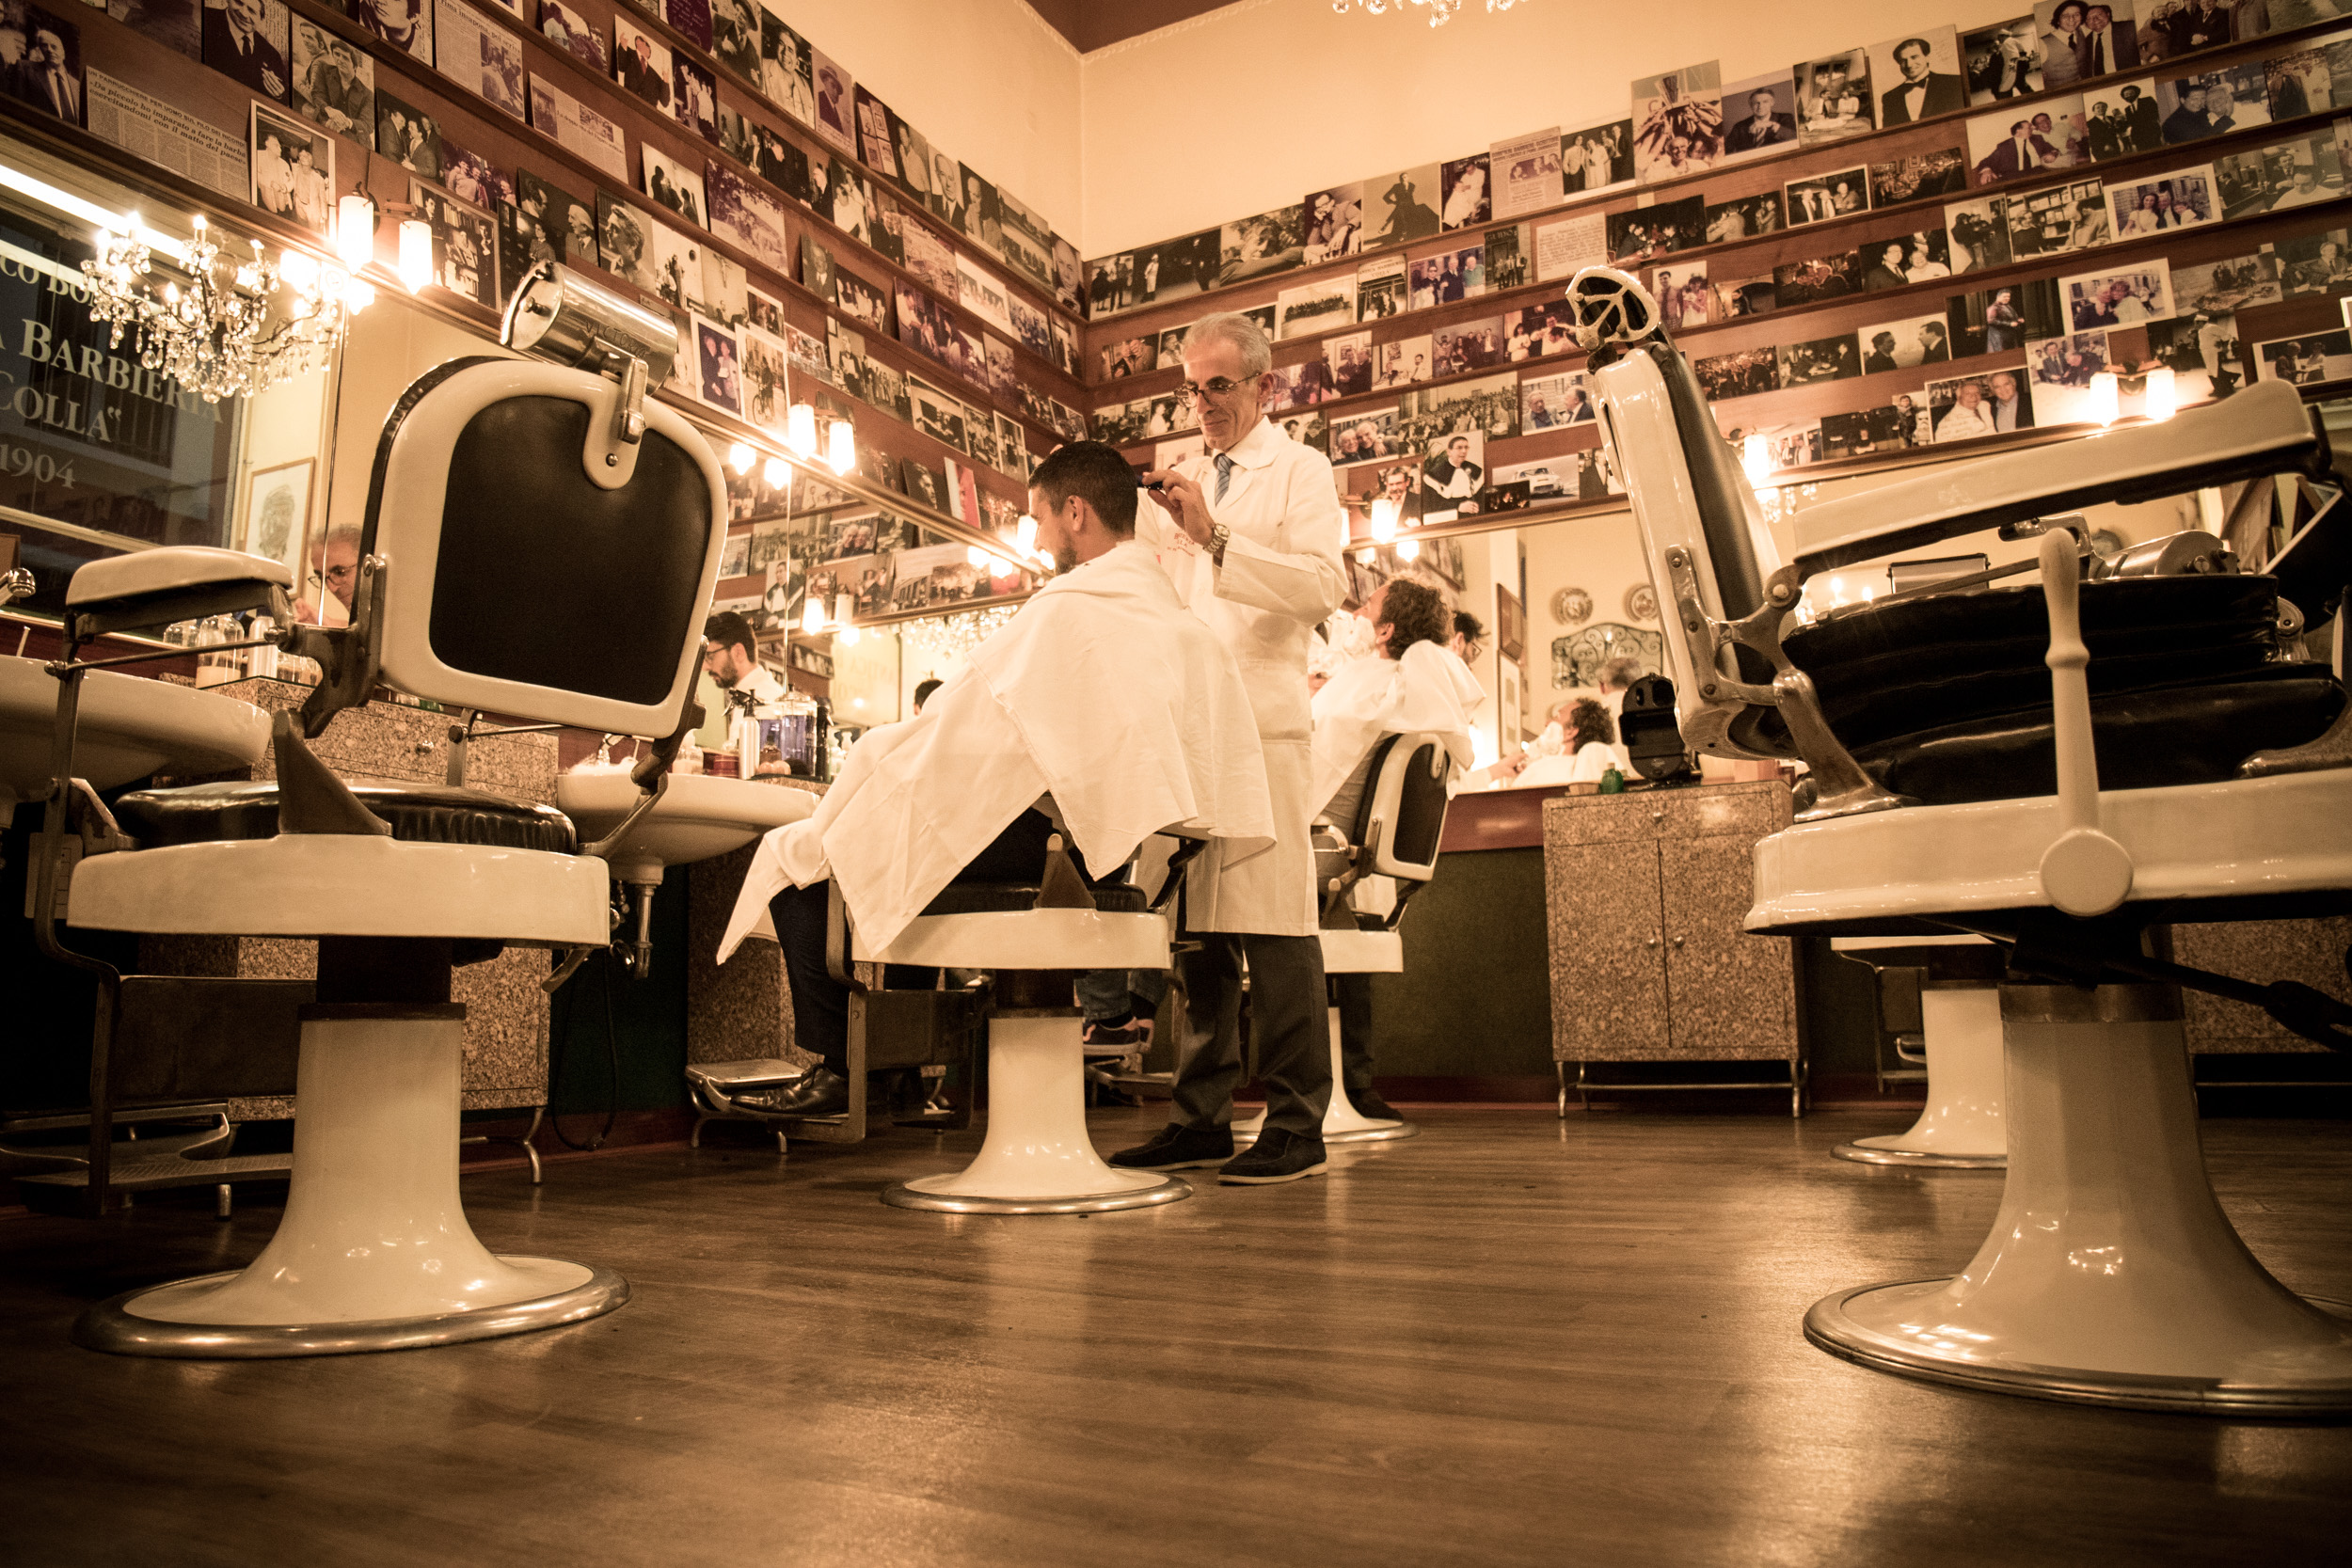 antica barbieria colla milano bottega storica barbiere viaggio nel tempo 